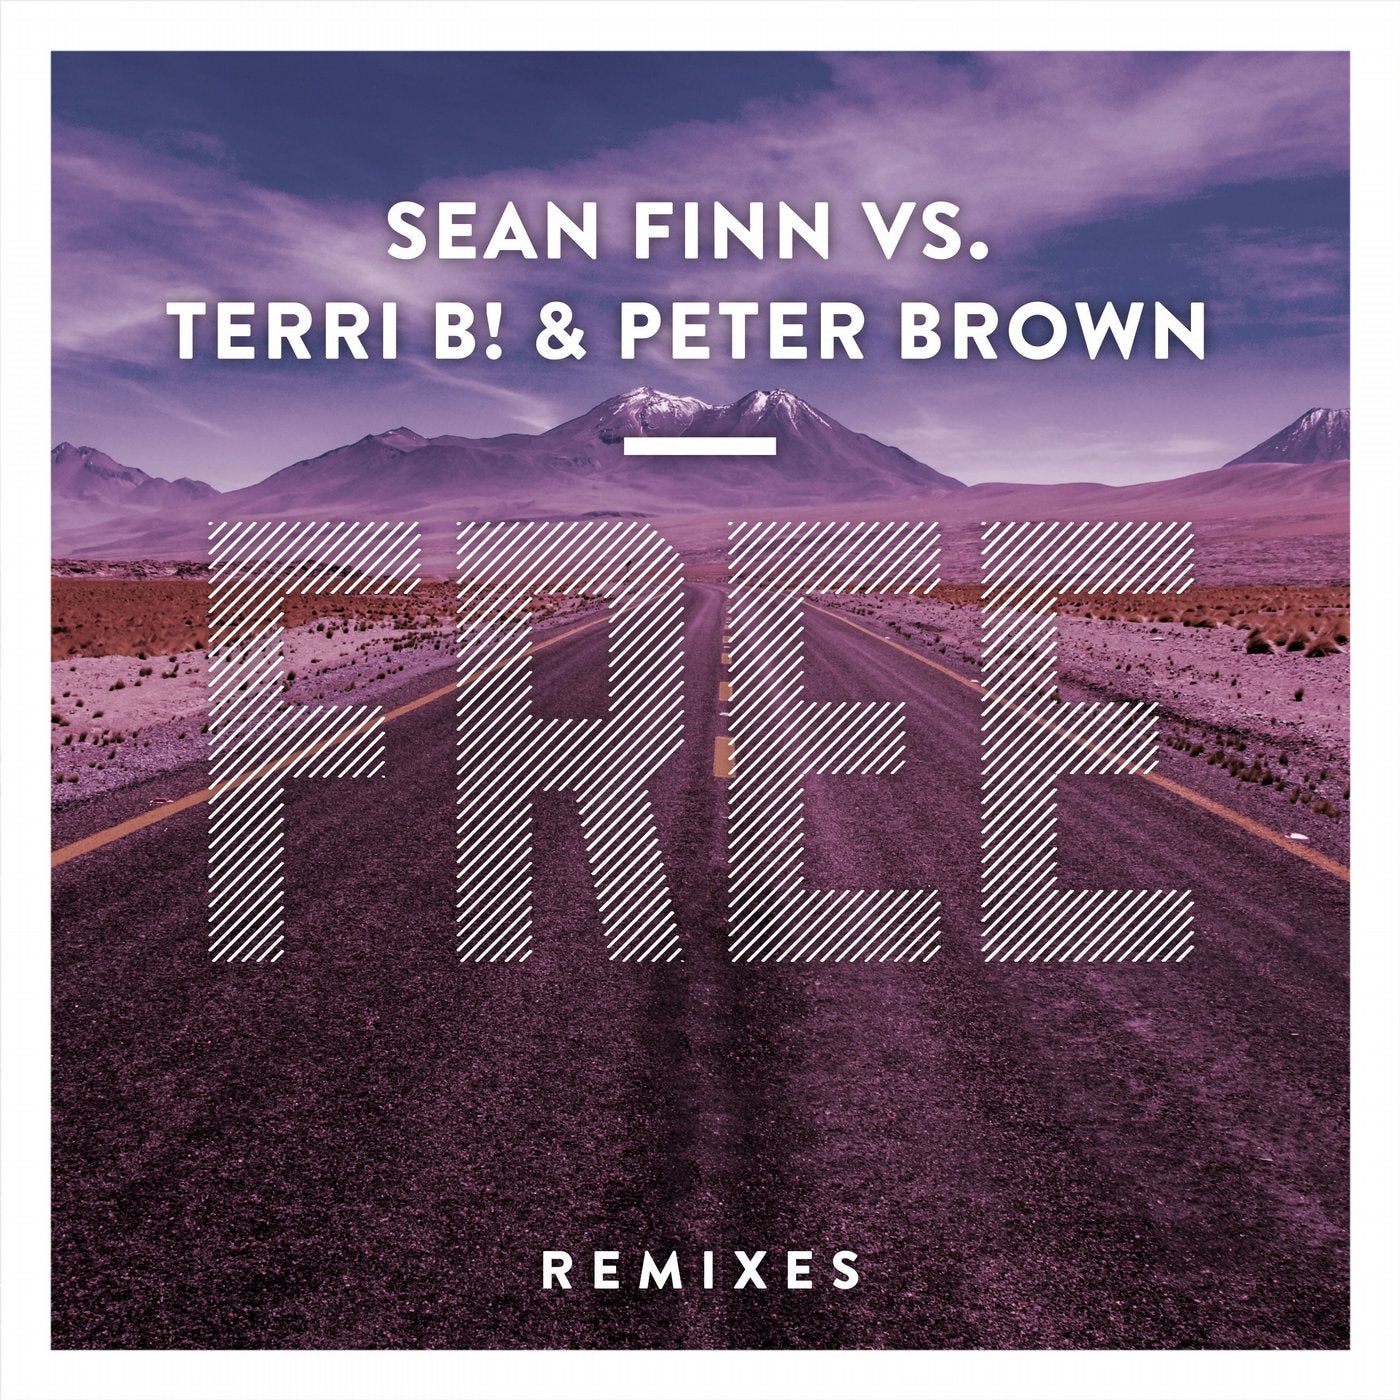 Free (Remixes)